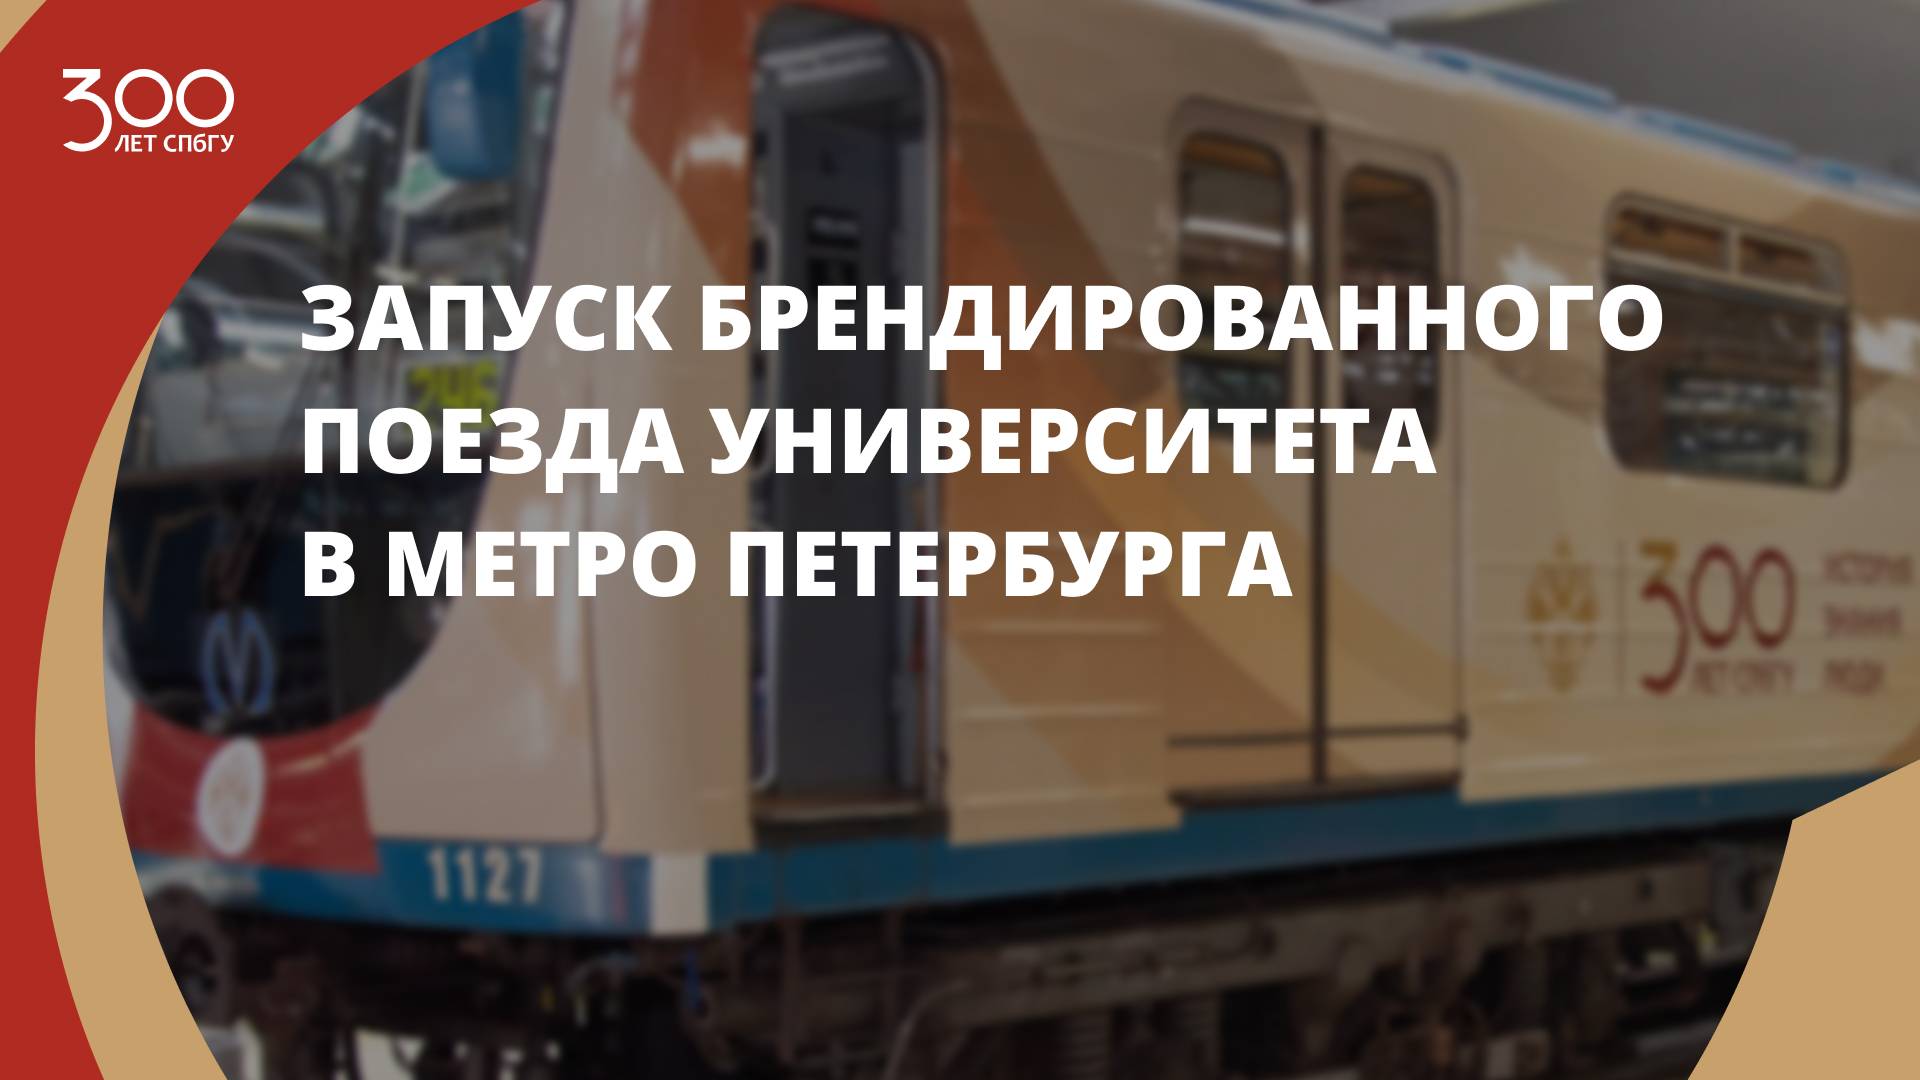 Запуск брендированного к 300-летию СПбГУ поезда в метро Петербурга